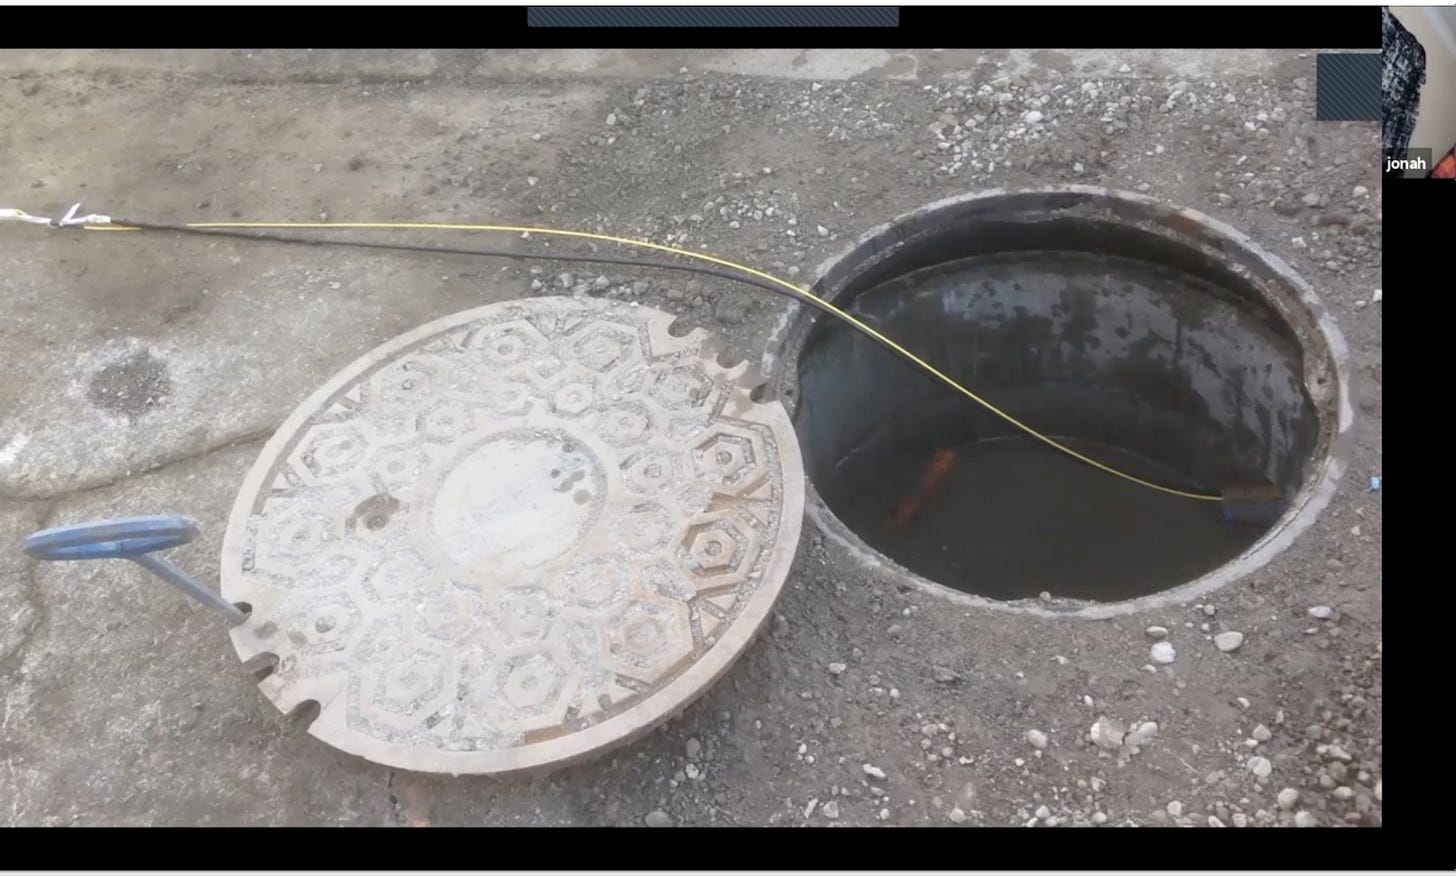 fiber cable going through manhole